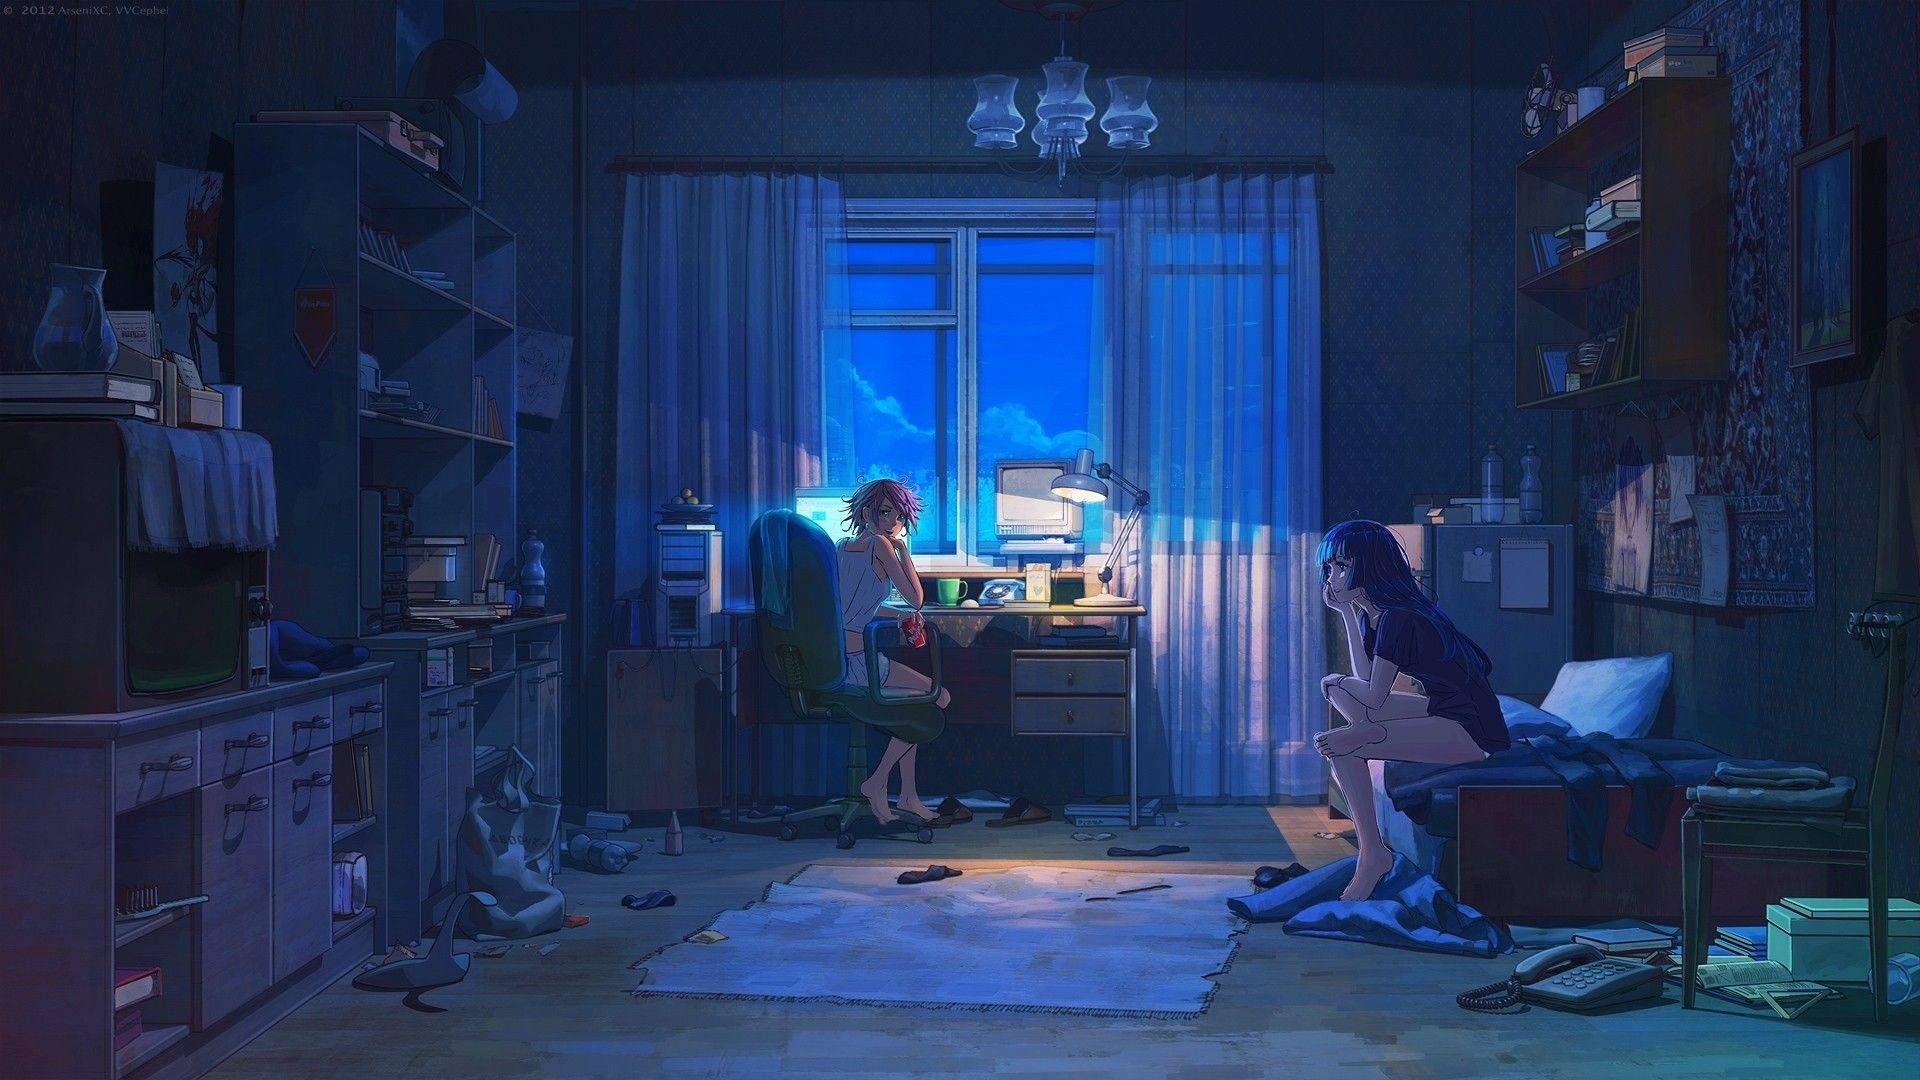 Sleepover Aesthetic Anime Art Desktop Wallpaper